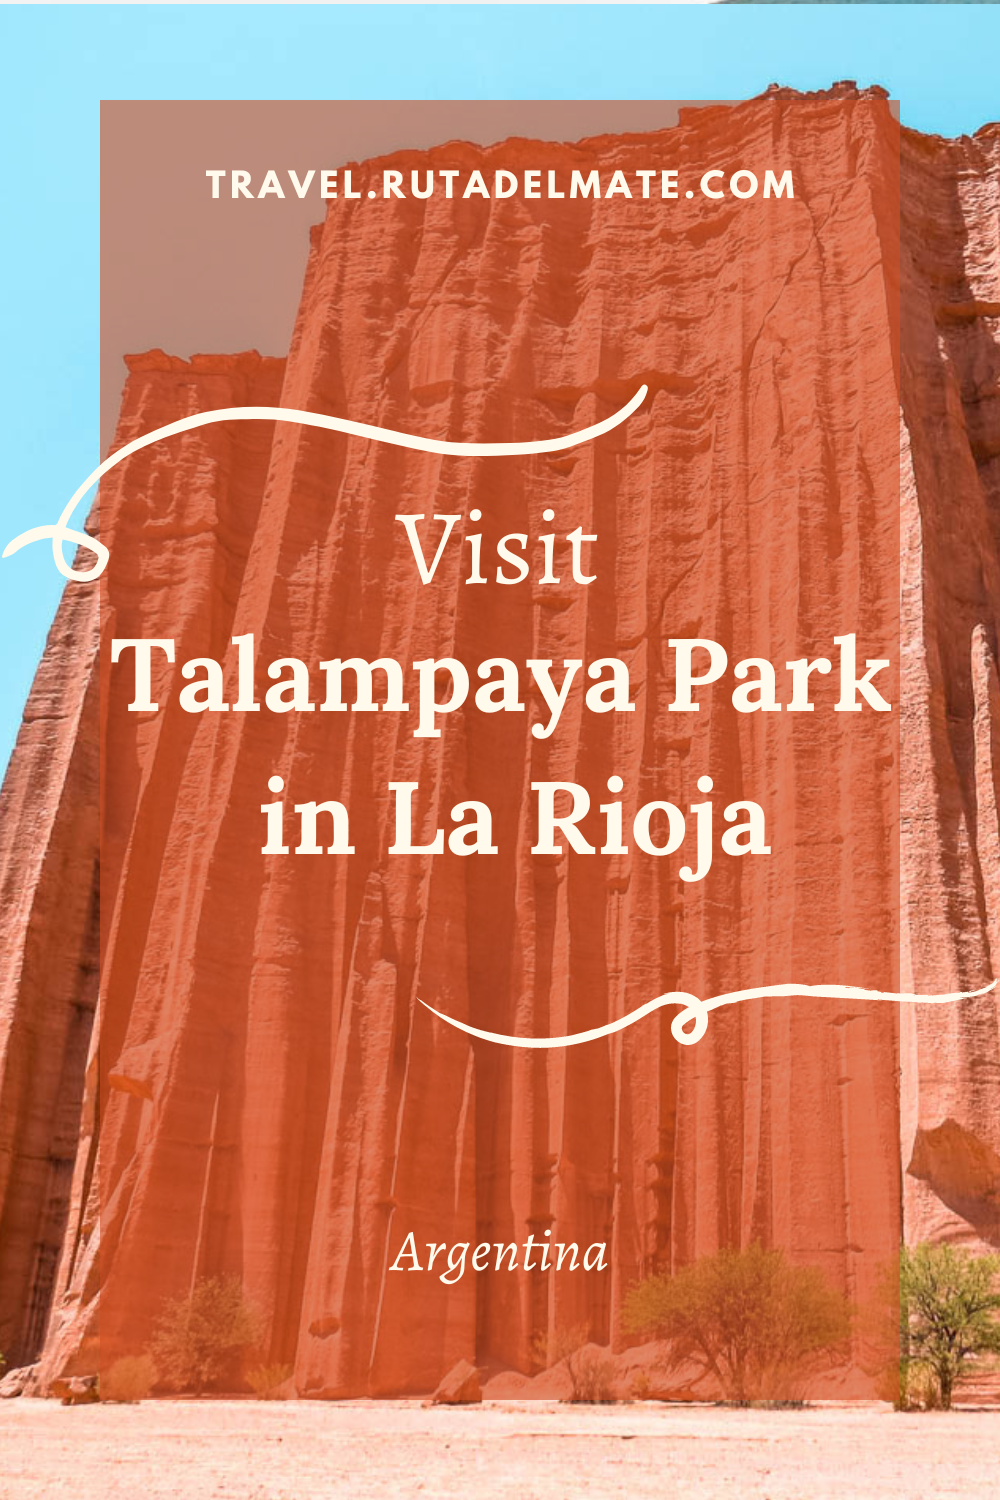 Tips for visiting Talampaya